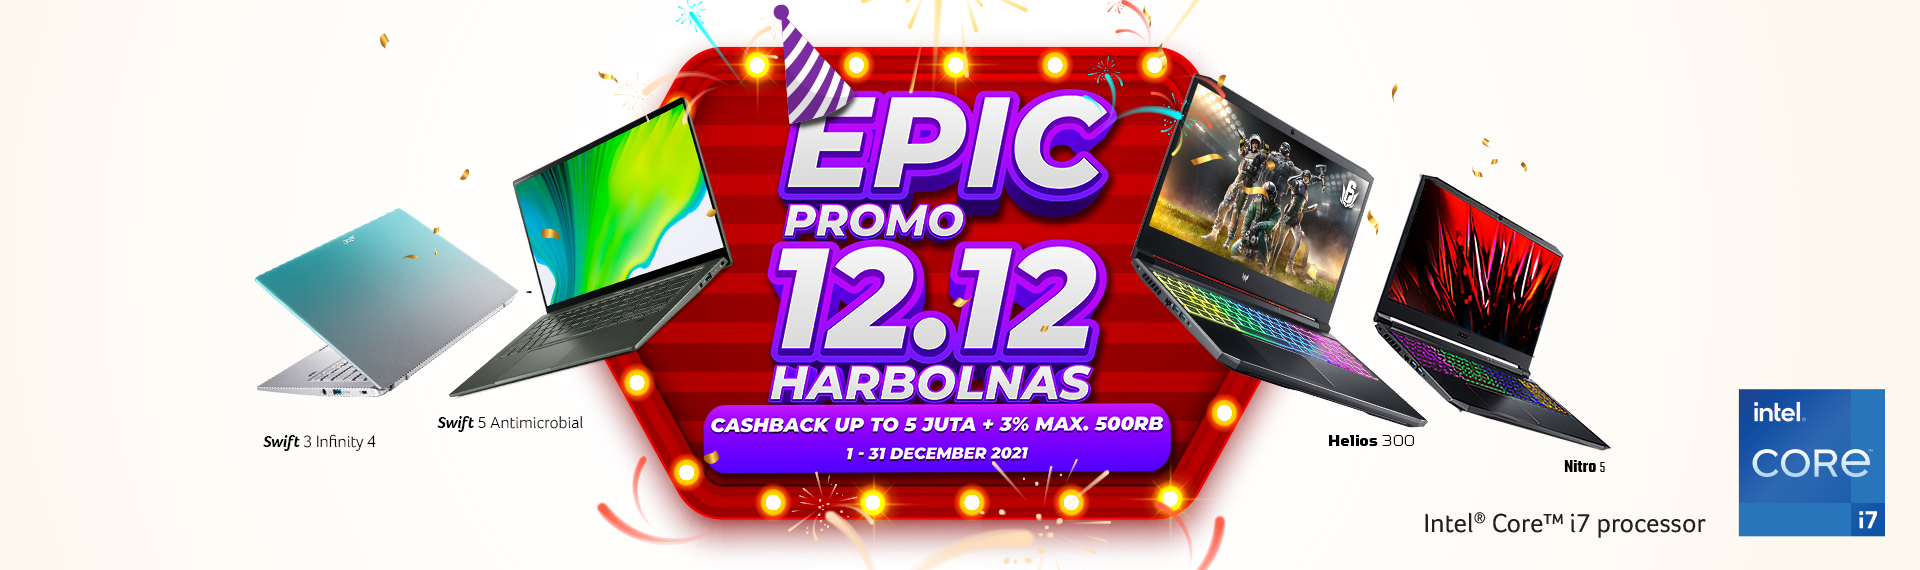 Epic Promo 12.12 Acer, Cashback Hingga 5 Juta + 3% Max. 500Ribu & Gratis Ongkir!